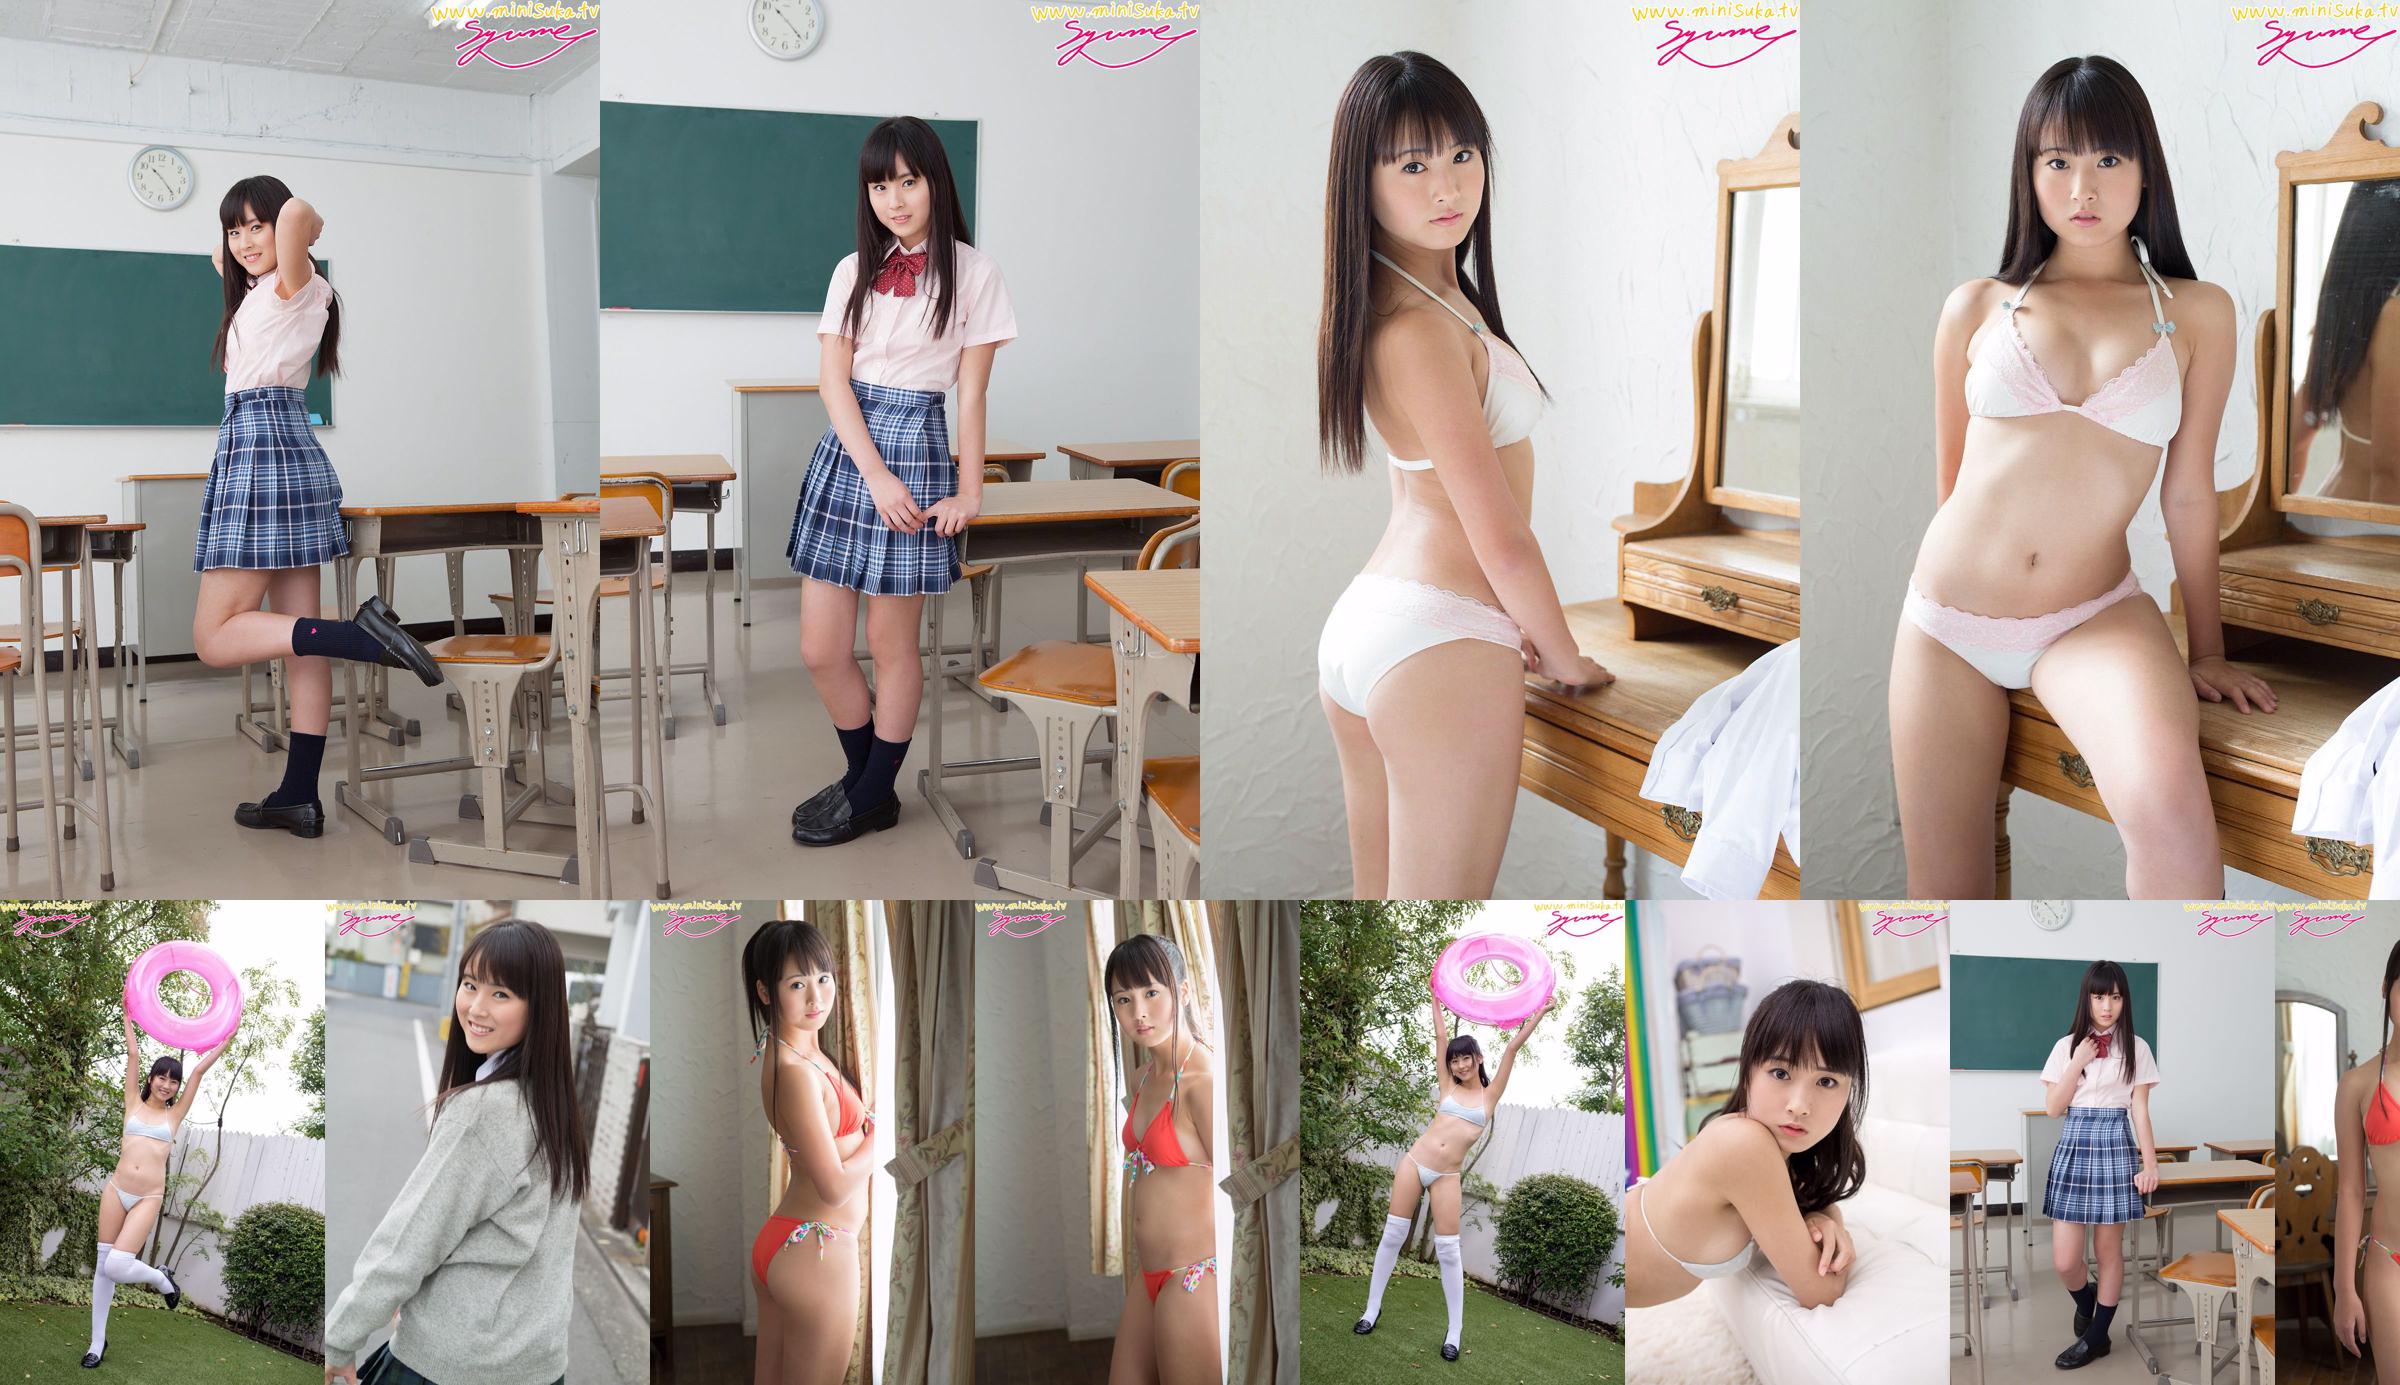 ยูเมะชินโจนักเรียนมัธยมหญิงประจำการ [Minisuka.tv] No.51a4cb หน้า 1